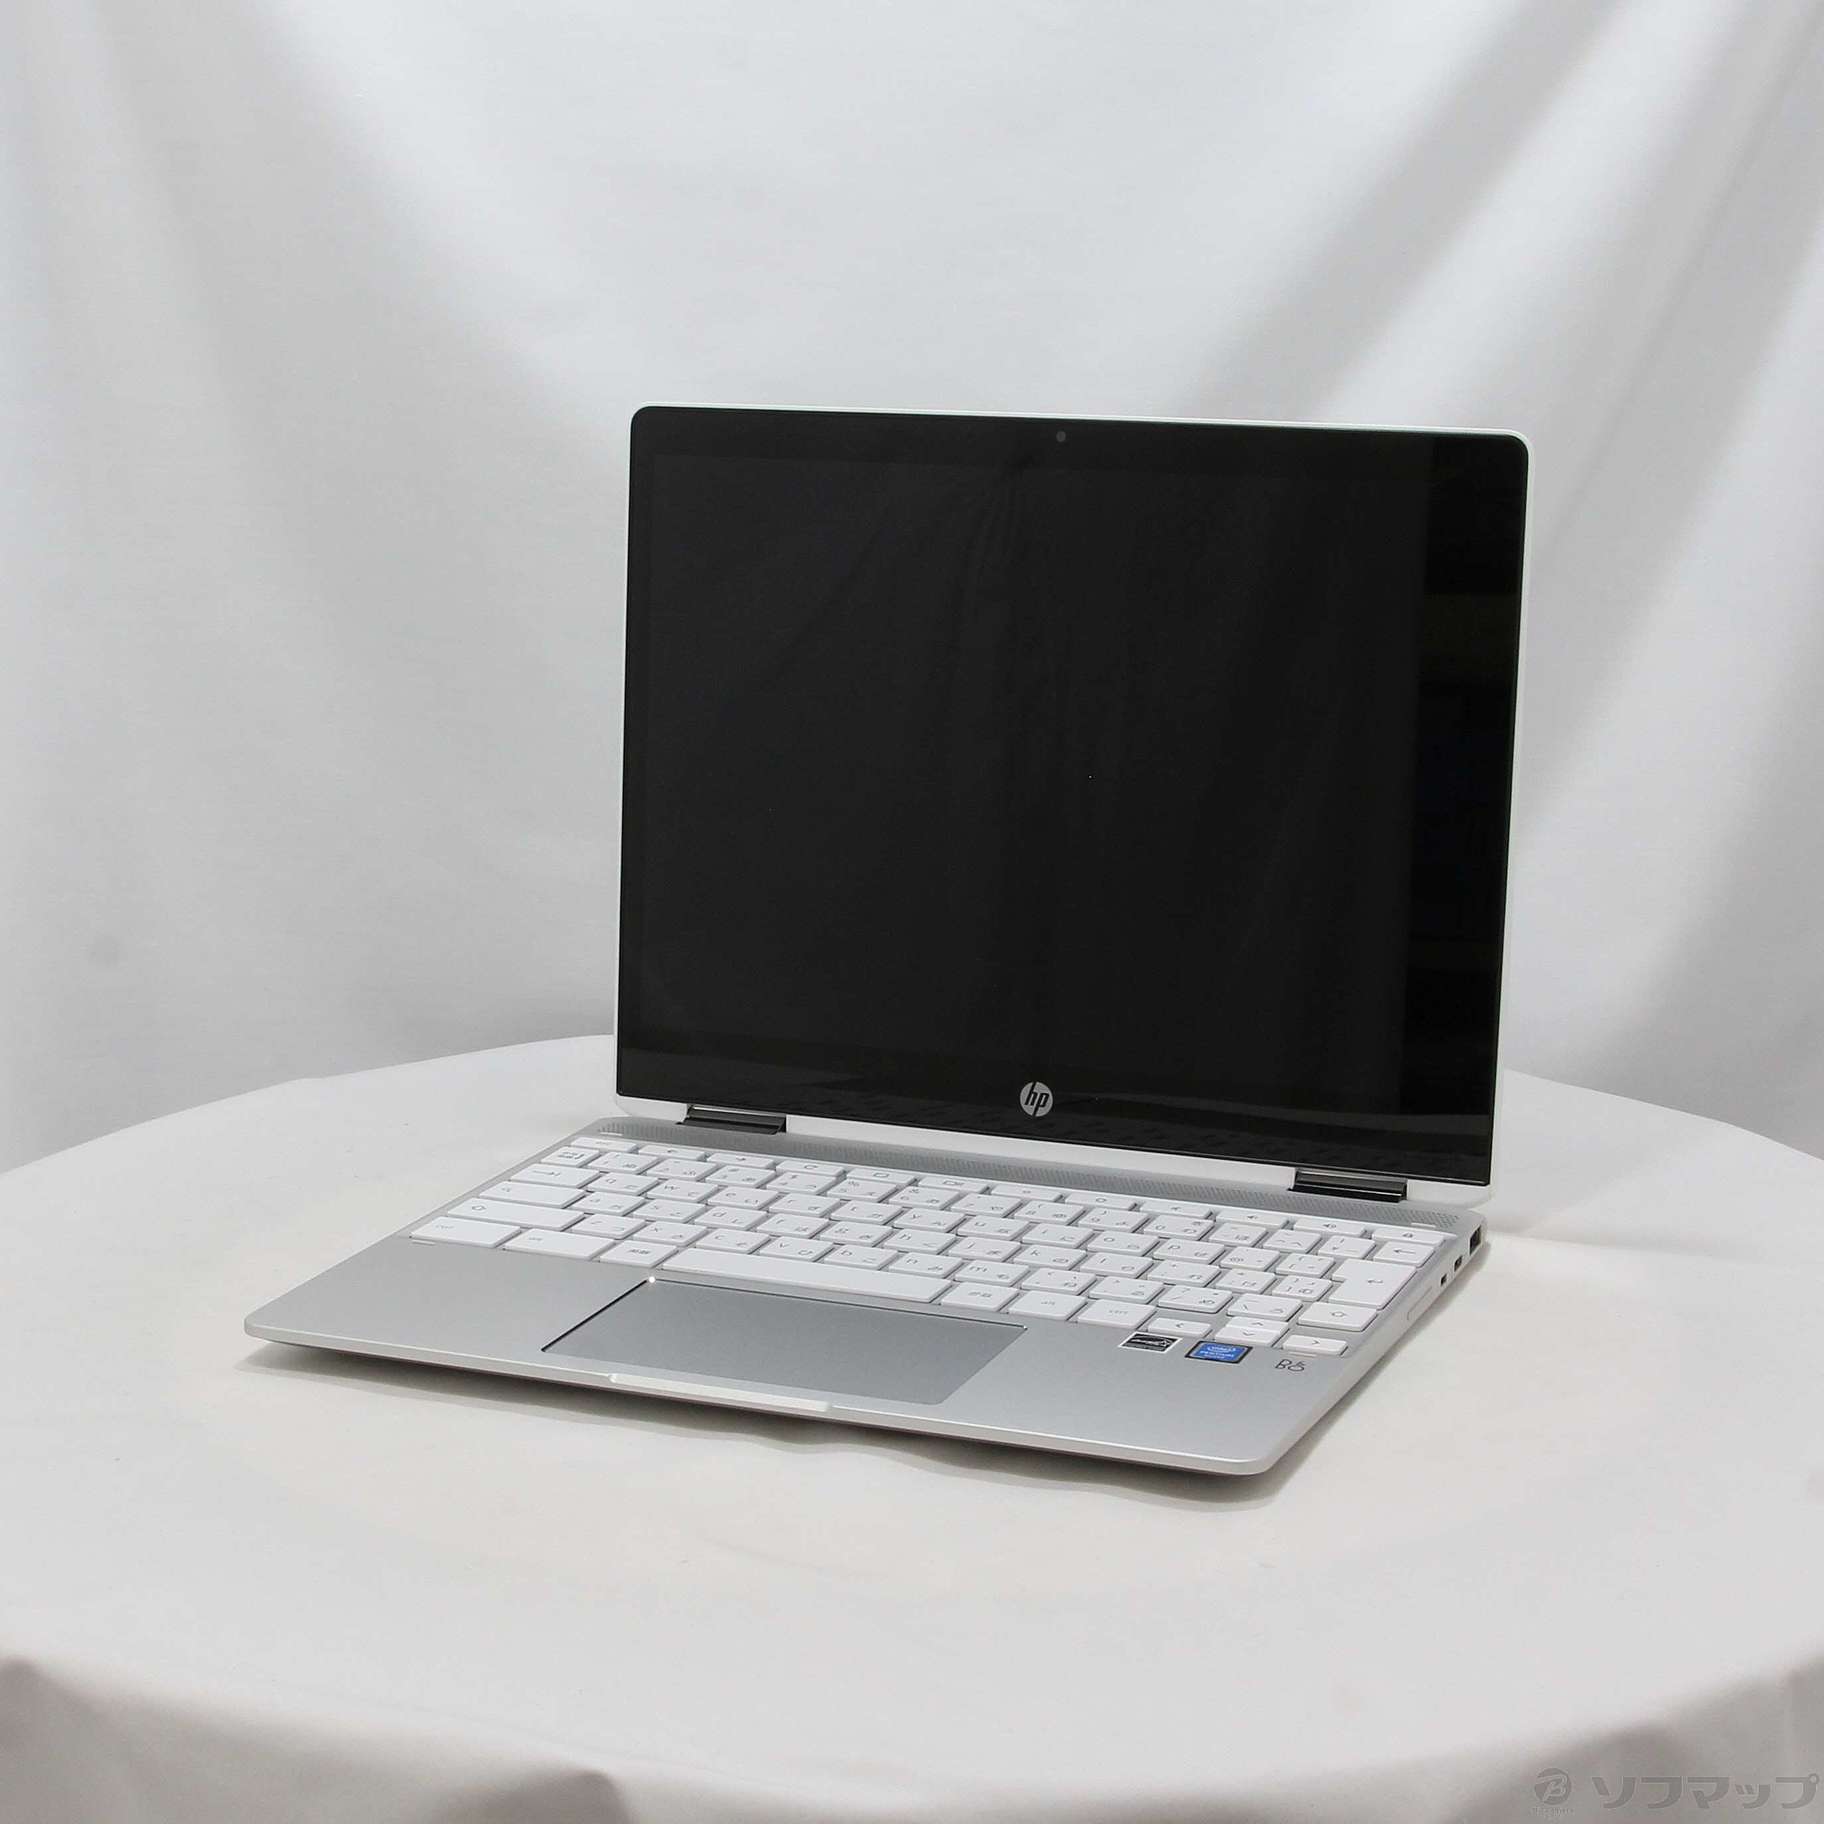 HP chromebook セラミックホワイト x360 12b 未使用